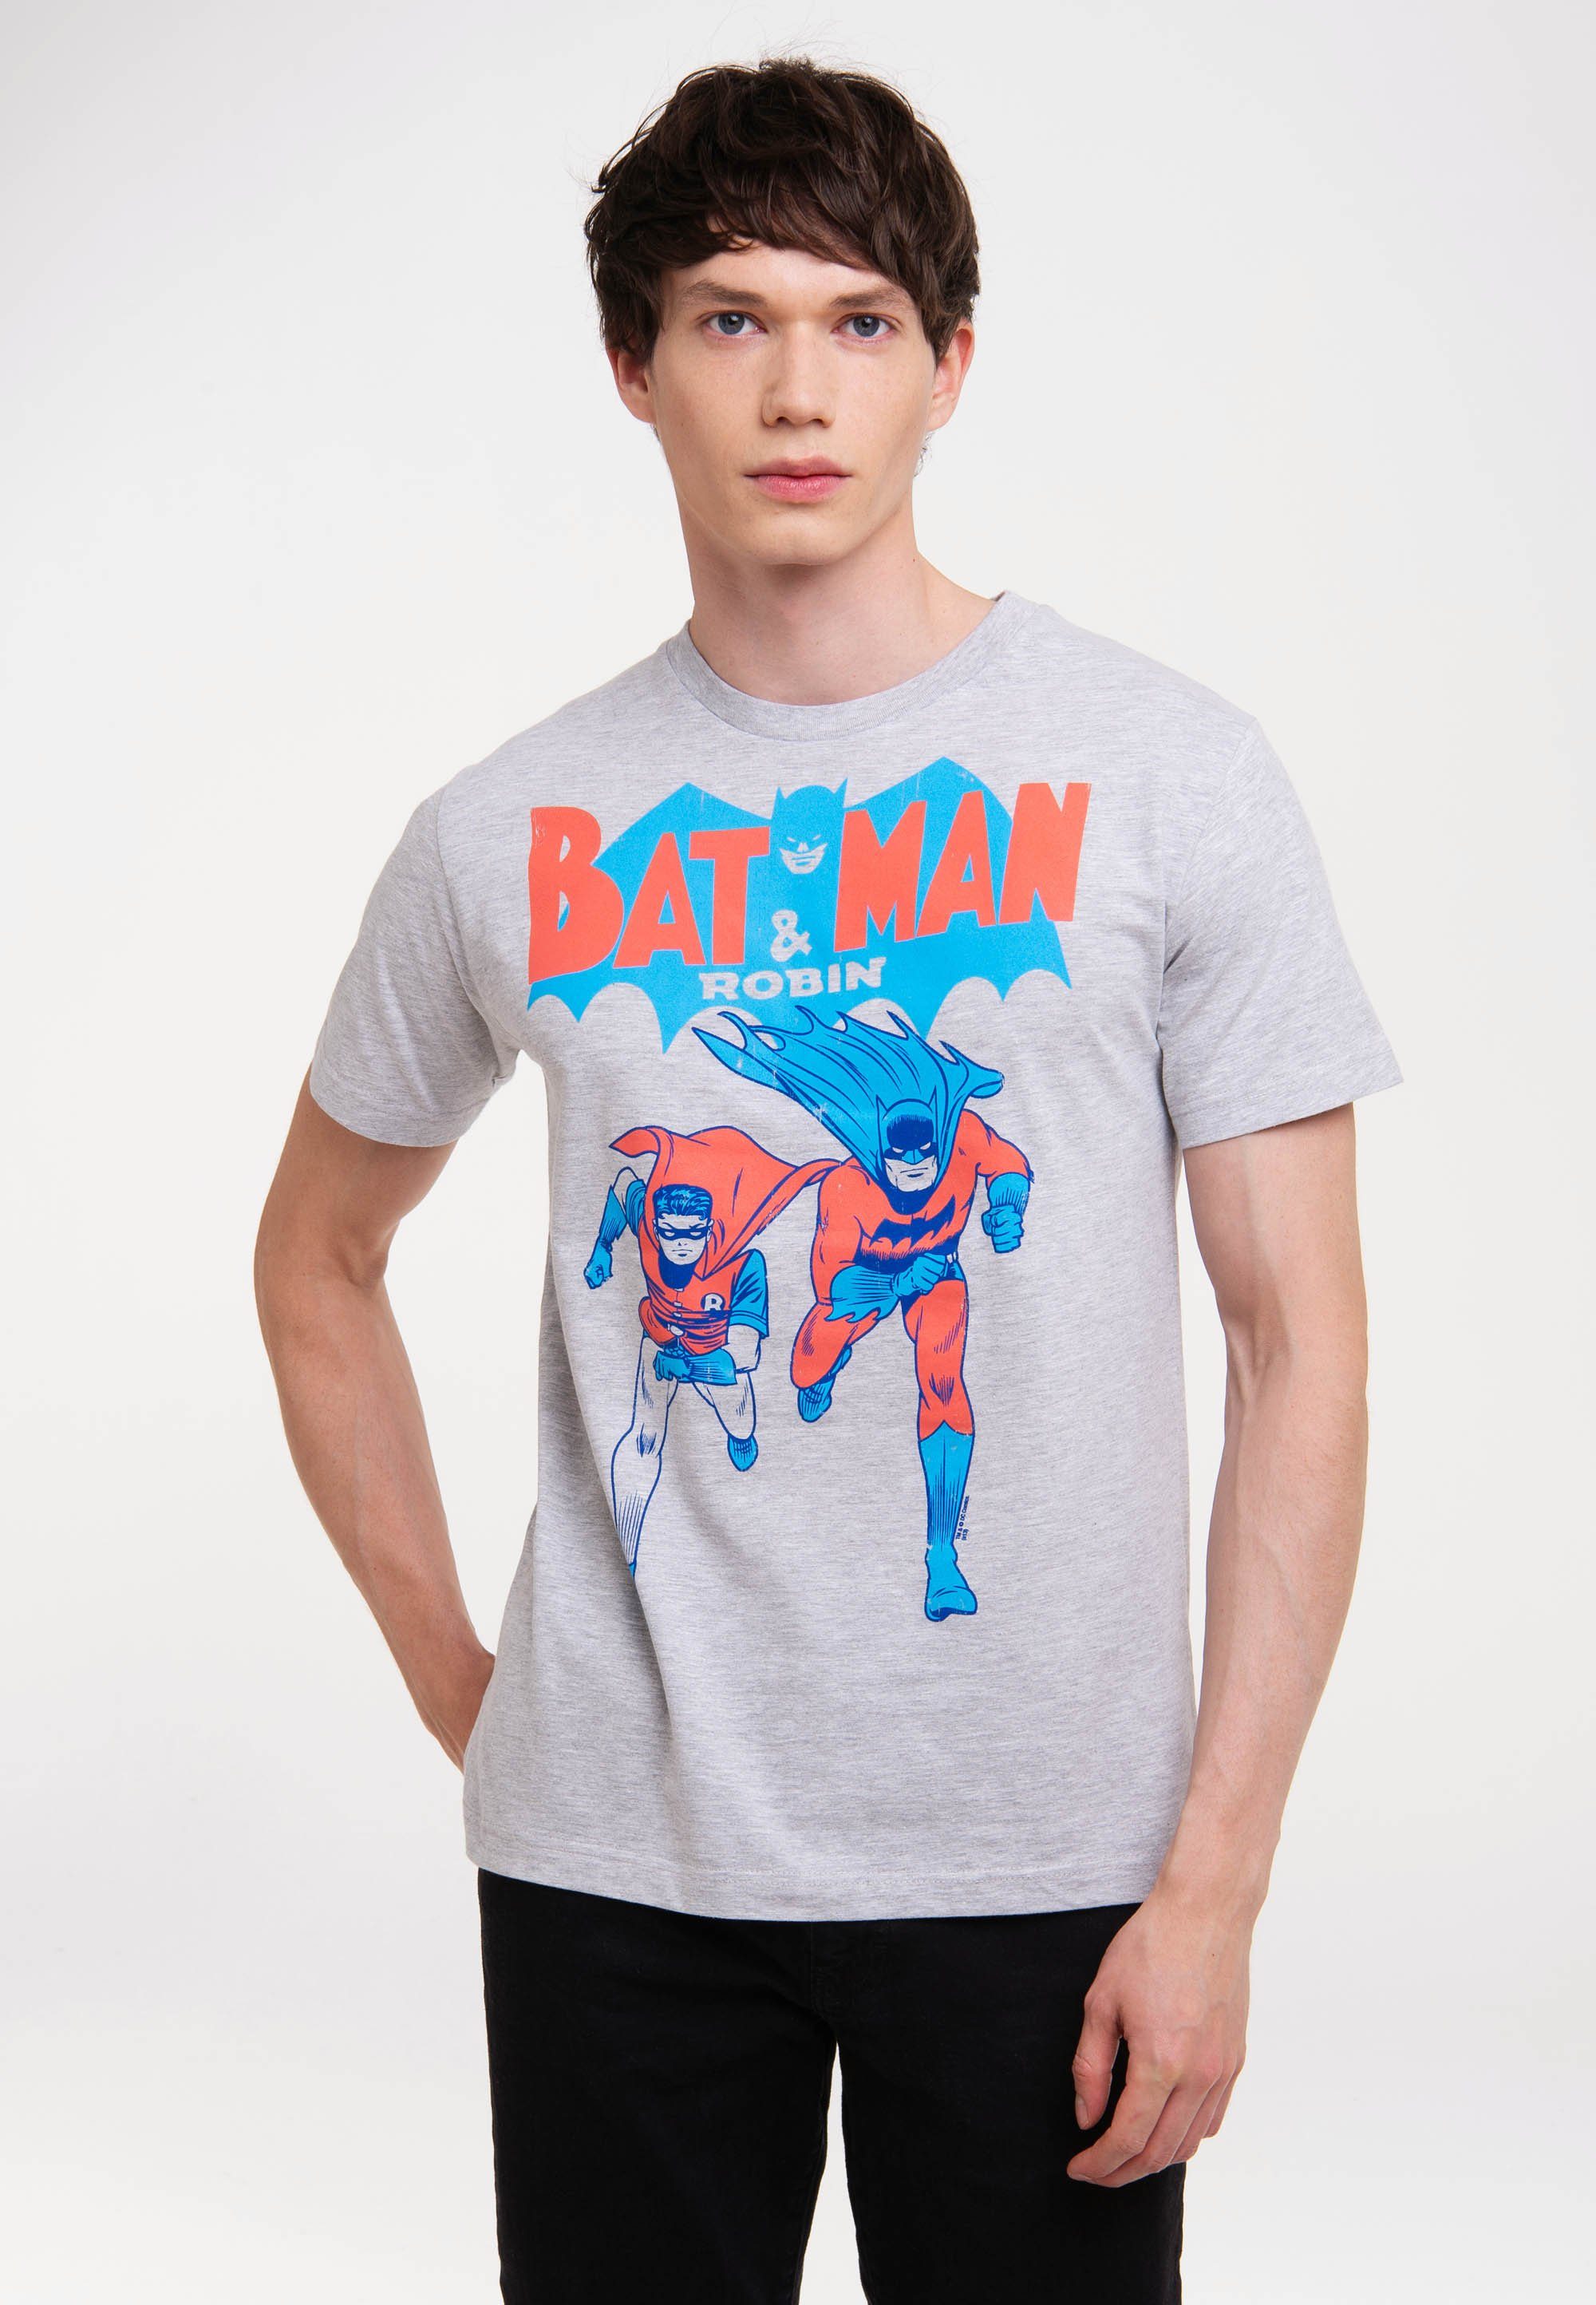 LOGOSHIRT T-Shirt BATMAN AND ROBIN mit coolem Frontprint